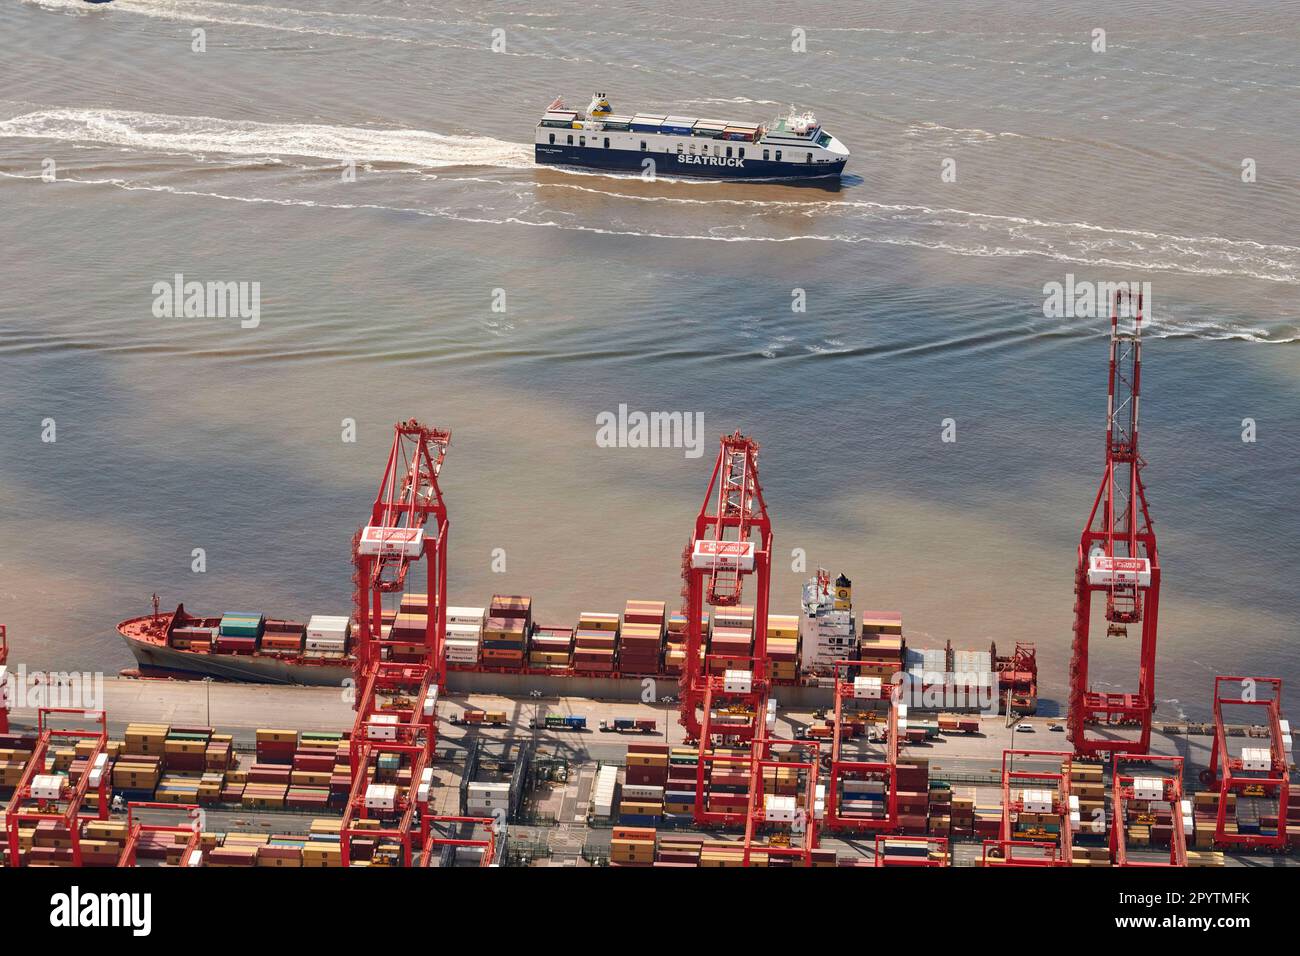 Navire-conteneur déchargeant à Peel Port, Seaforth Docks, Merseyside, sur l'estuaire de Mersey, Liverpool, nord-ouest de l'Angleterre, Royaume-Uni Banque D'Images